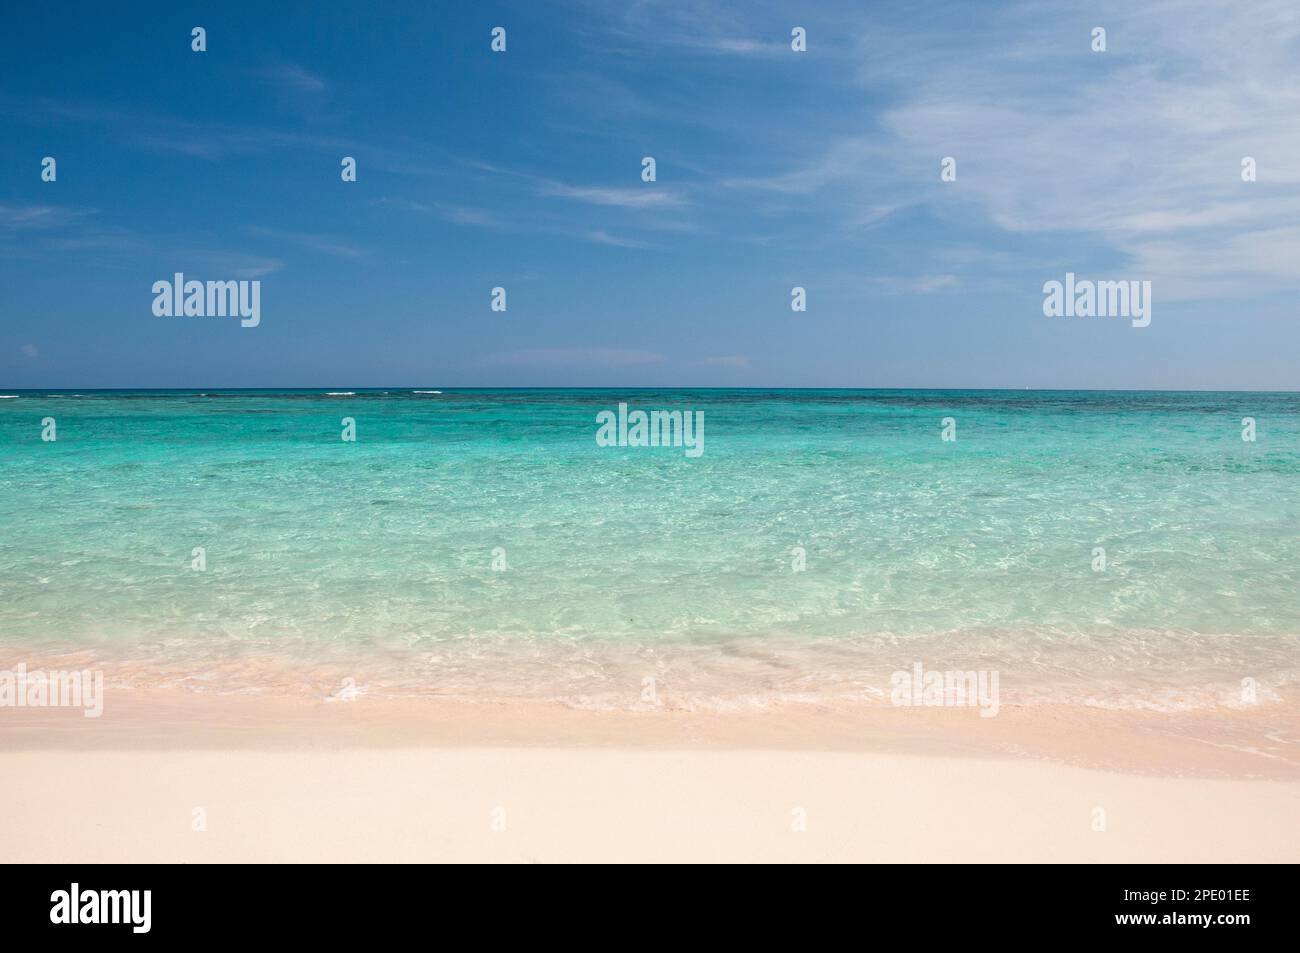 Image d'arrière-plan d'une plage déserte avec sable blanc et mer cristalline contre le ciel bleu. Concept d'évasion du stress quotidien, des vacances et du rel Banque D'Images